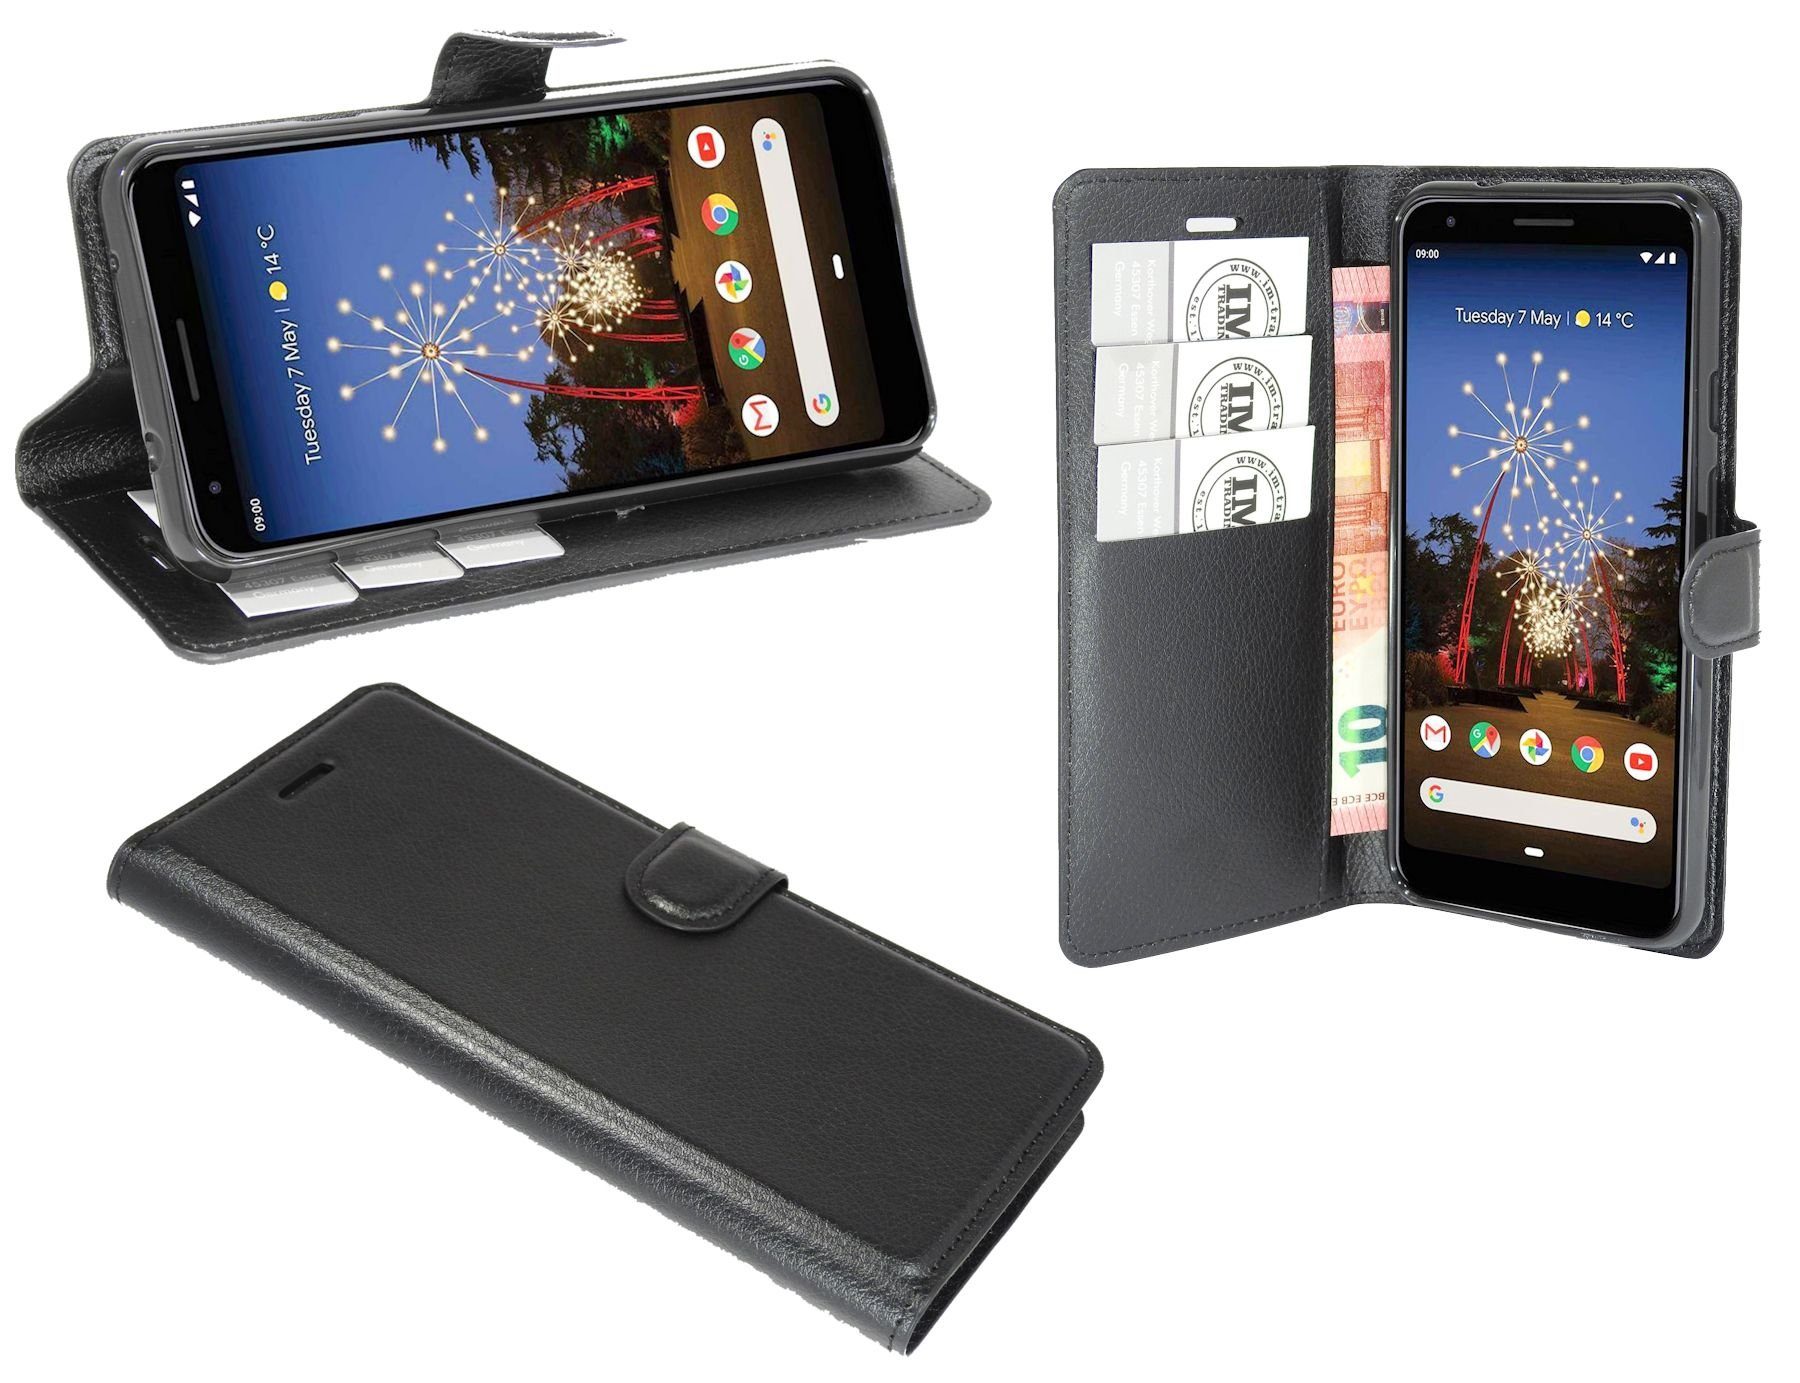 cofi1453 Handyhülle »Hülle Tasche für Google Pixel 3a XL«, Kunstleder  Schutzhülle Handy Wallet Case Cover mit Kartenfächern, Standfunktion  Schwarz online kaufen | OTTO